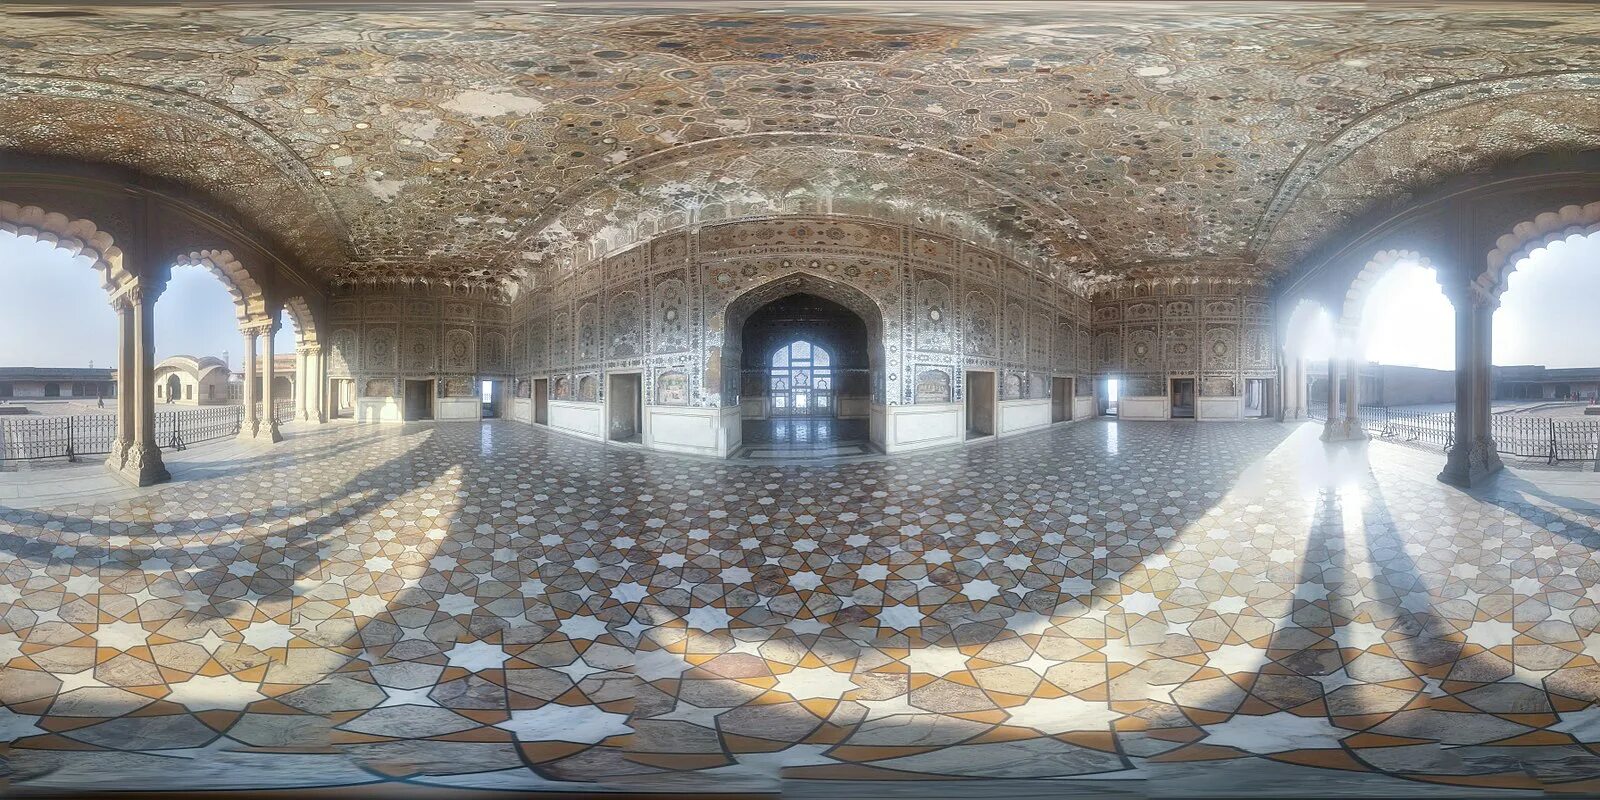 Дворец Sheesh Mahal (зеркальный дворец). Sheesh Mahal. Sheesh. Glass beams mahal mp3